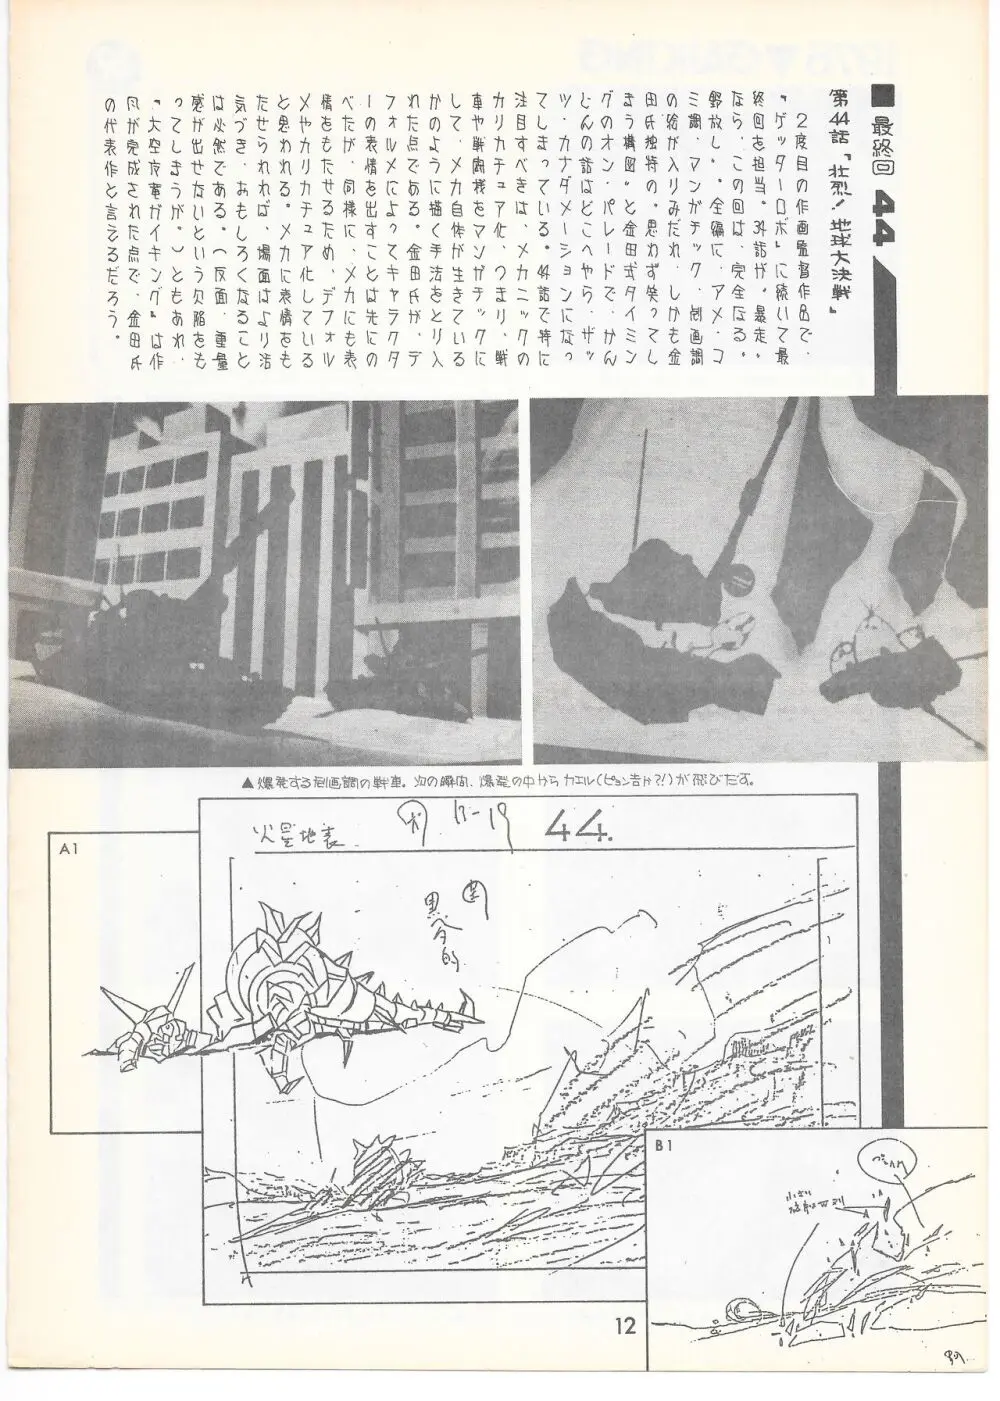 THE ANIMATOR 1 金田伊功特集号 11ページ